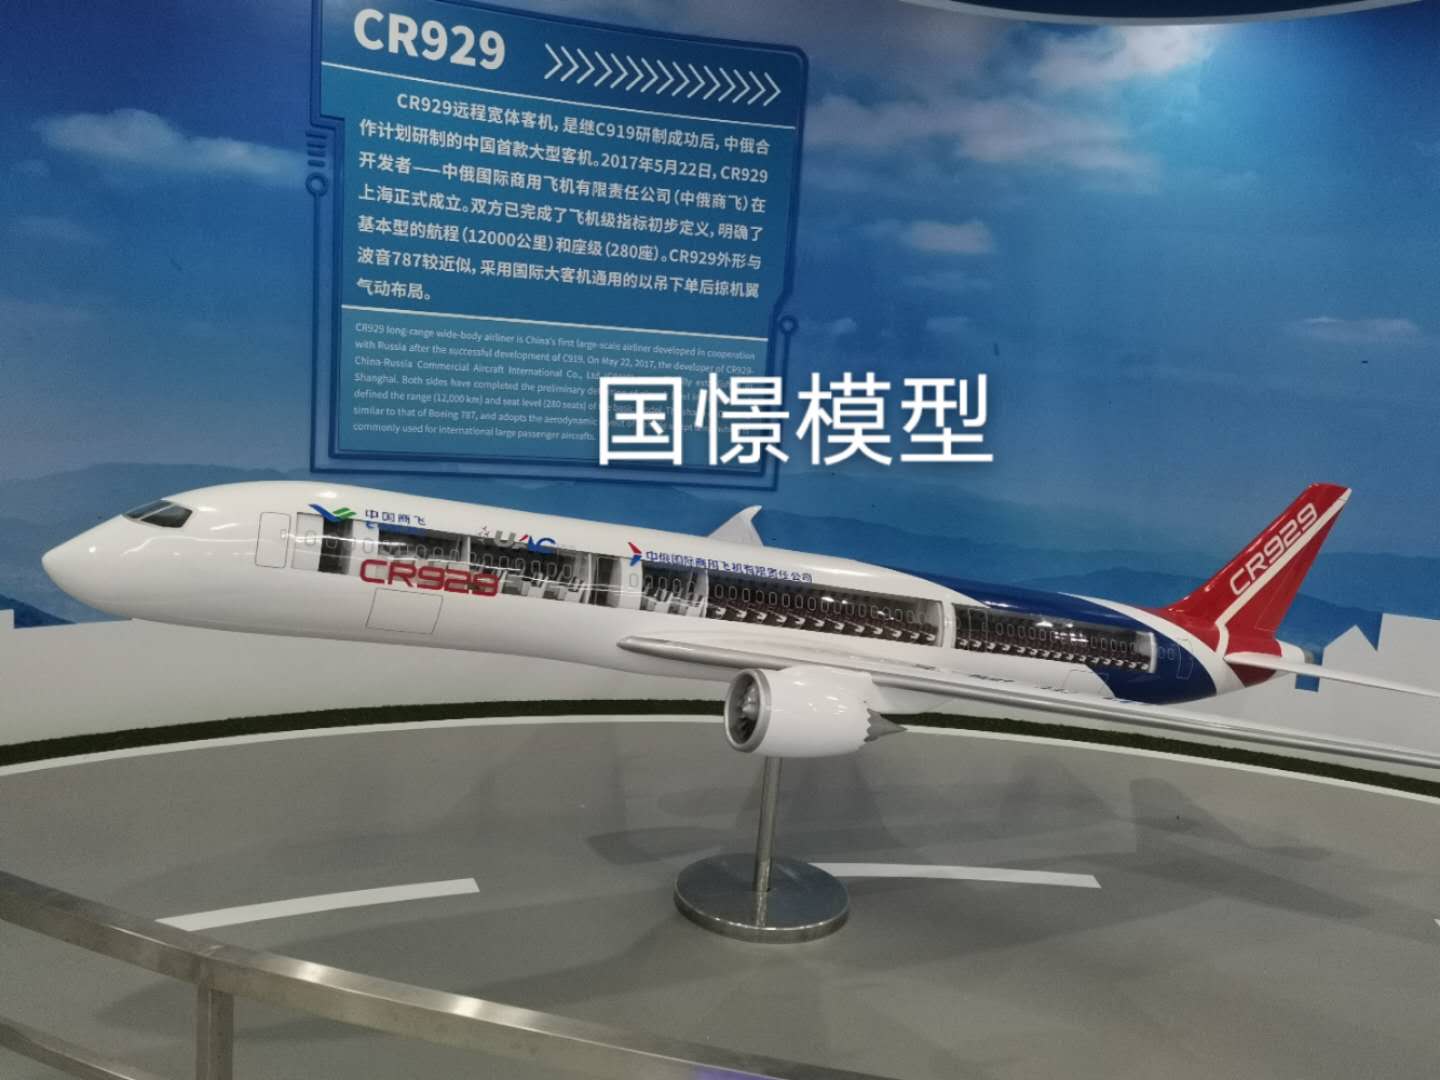 舞阳县飞机模型